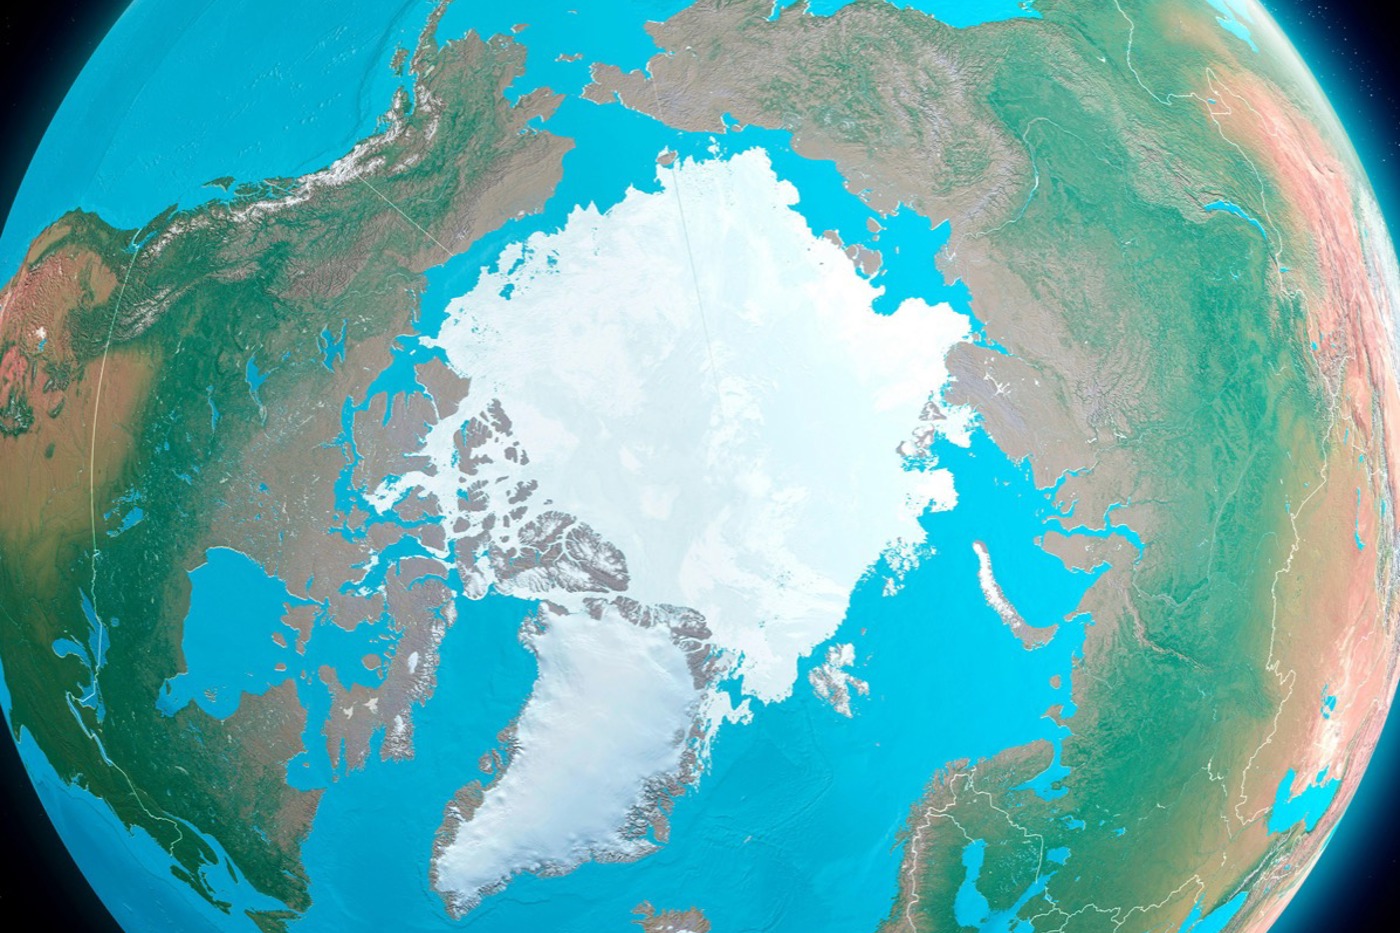 Das Satellitenbild zeigt die Ausdehnung des Packeises über dem Arktischen Ozean am Ende des Sommers (geringste Ausdehnung). Dies ist allerdings nur eine Momentaufnahme – die überdurchschnittliche Erwärmung der Arktis lässt das Packeis weiter dramatisch schmelzen. In wenigen Jahrzehnten könnte das Nordpolarmeer im Sommer gänzlich eisfrei sein. © Naeblys/Alamy